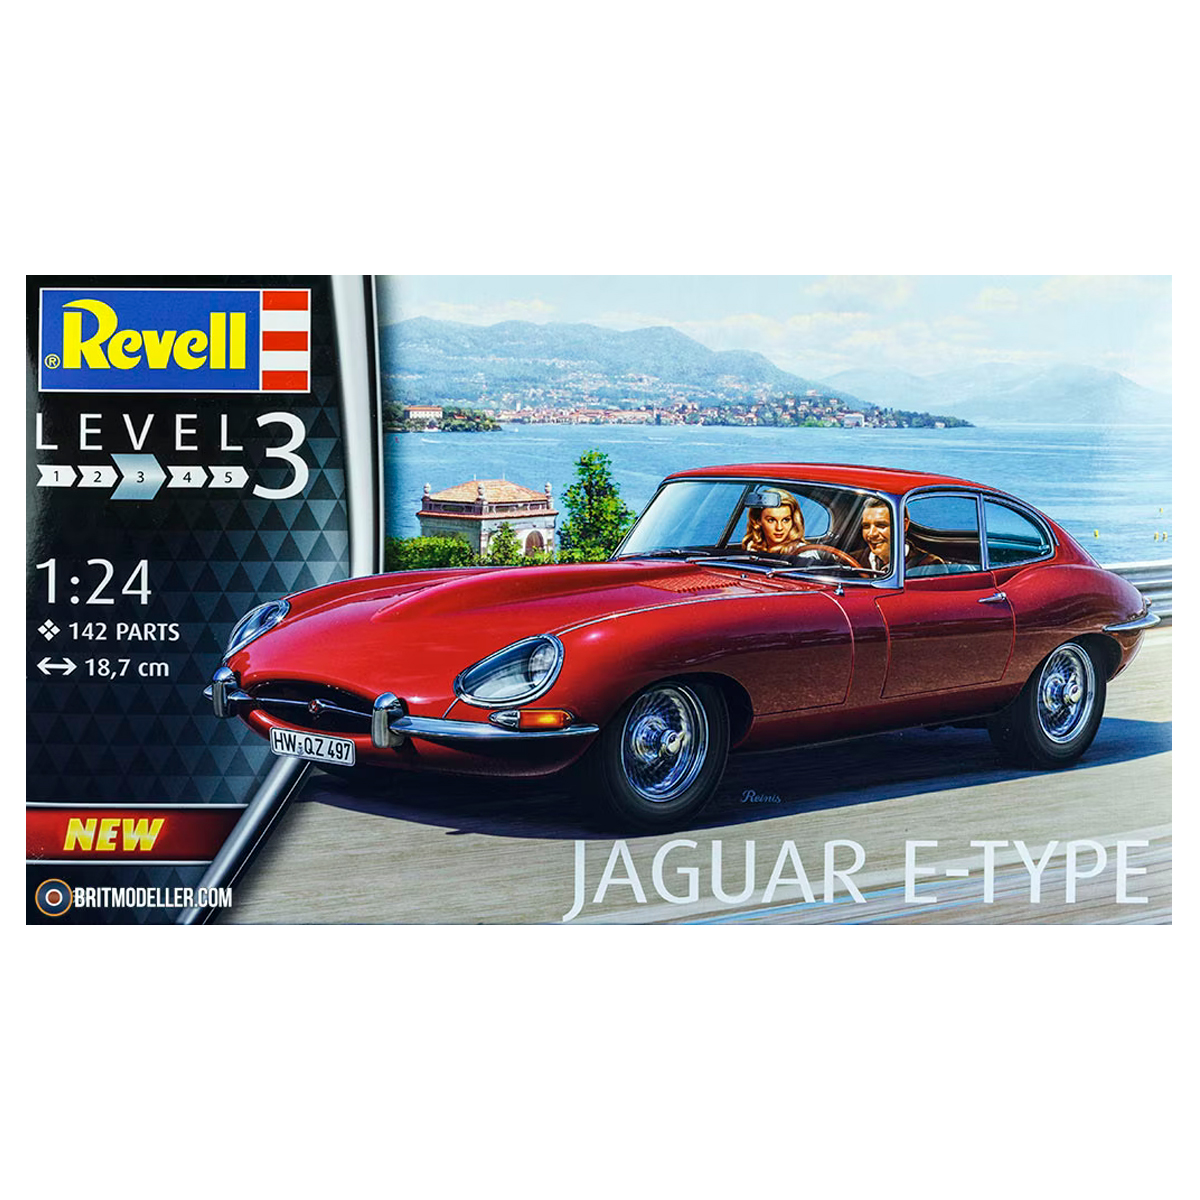 Jaguar E-Type Coupé 1/24